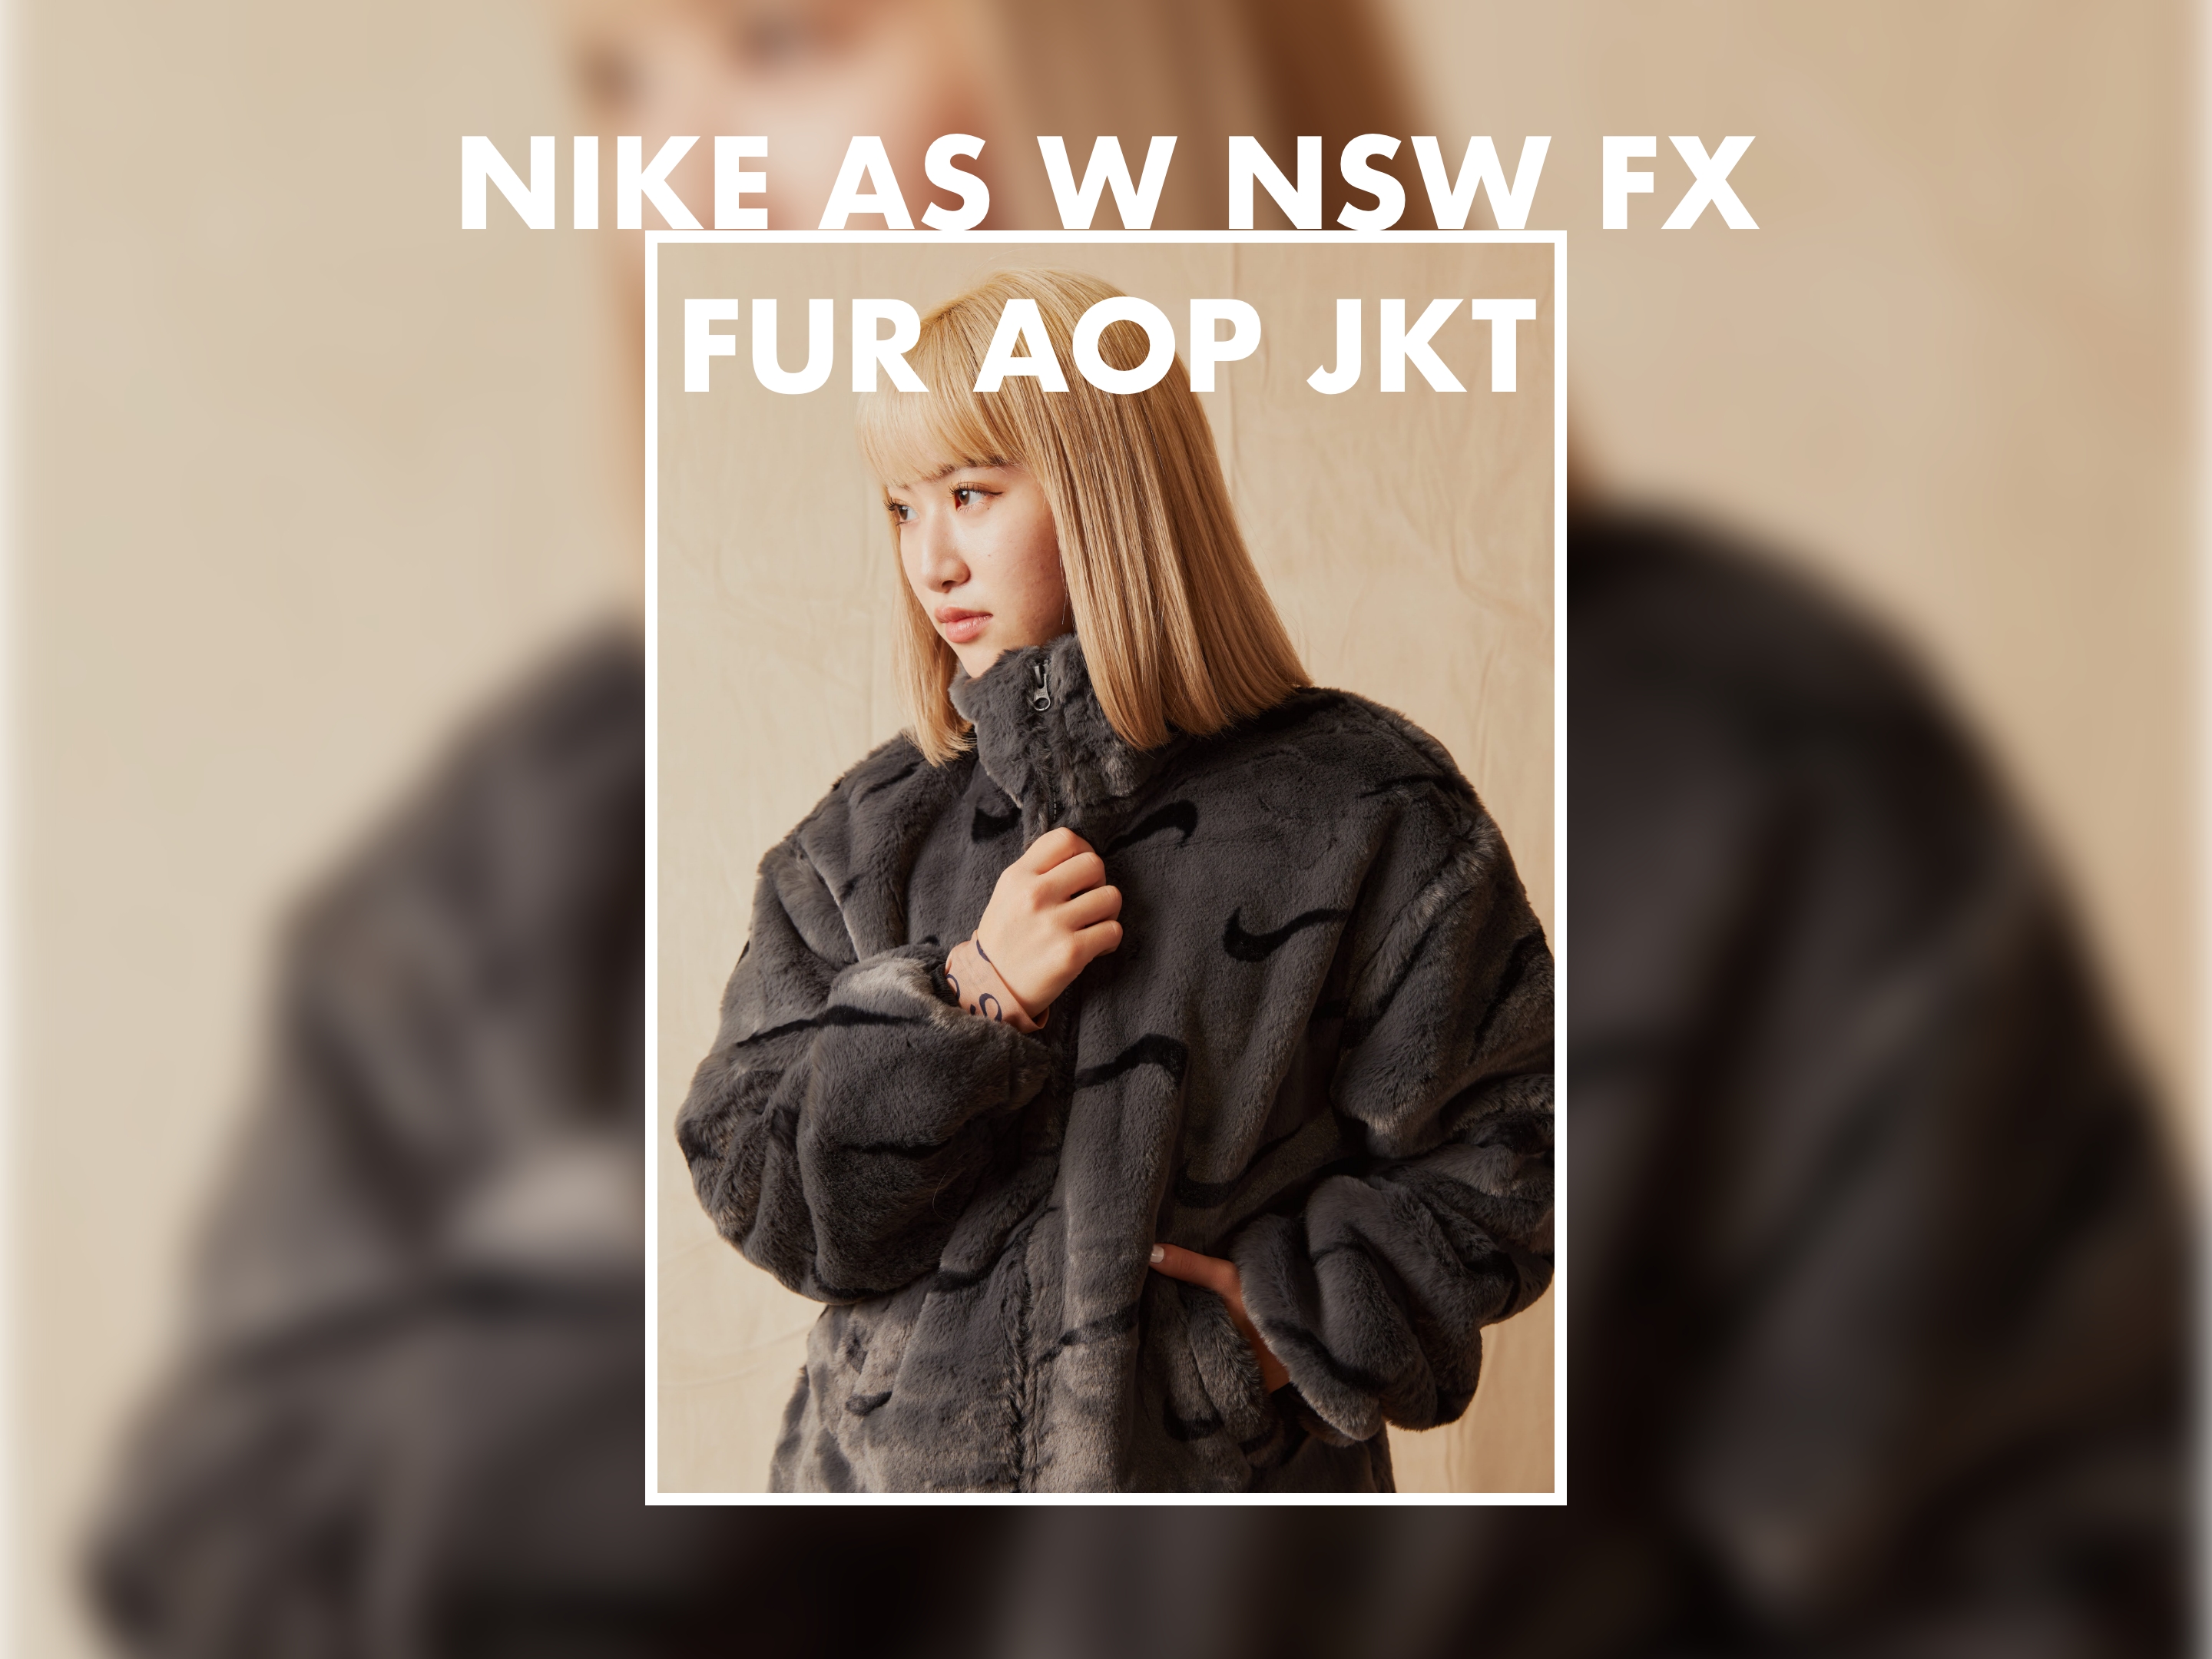 NIKE AS W NSW FX FUR AOP JKT